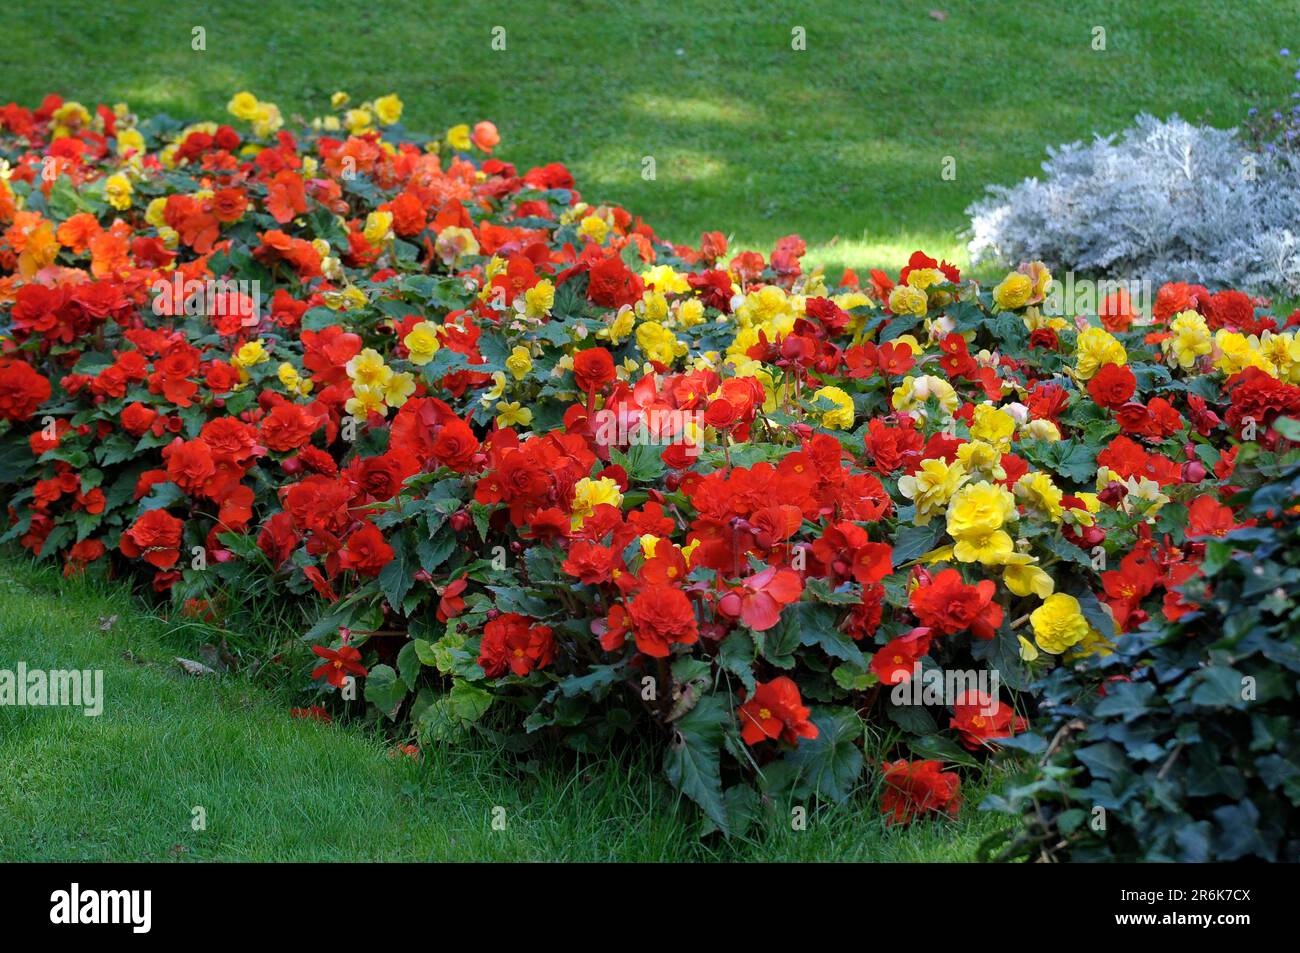 Bluehendes Barock Ludwigsburg, begonia (Begonia) bed, begonias, begonias Stock Photo